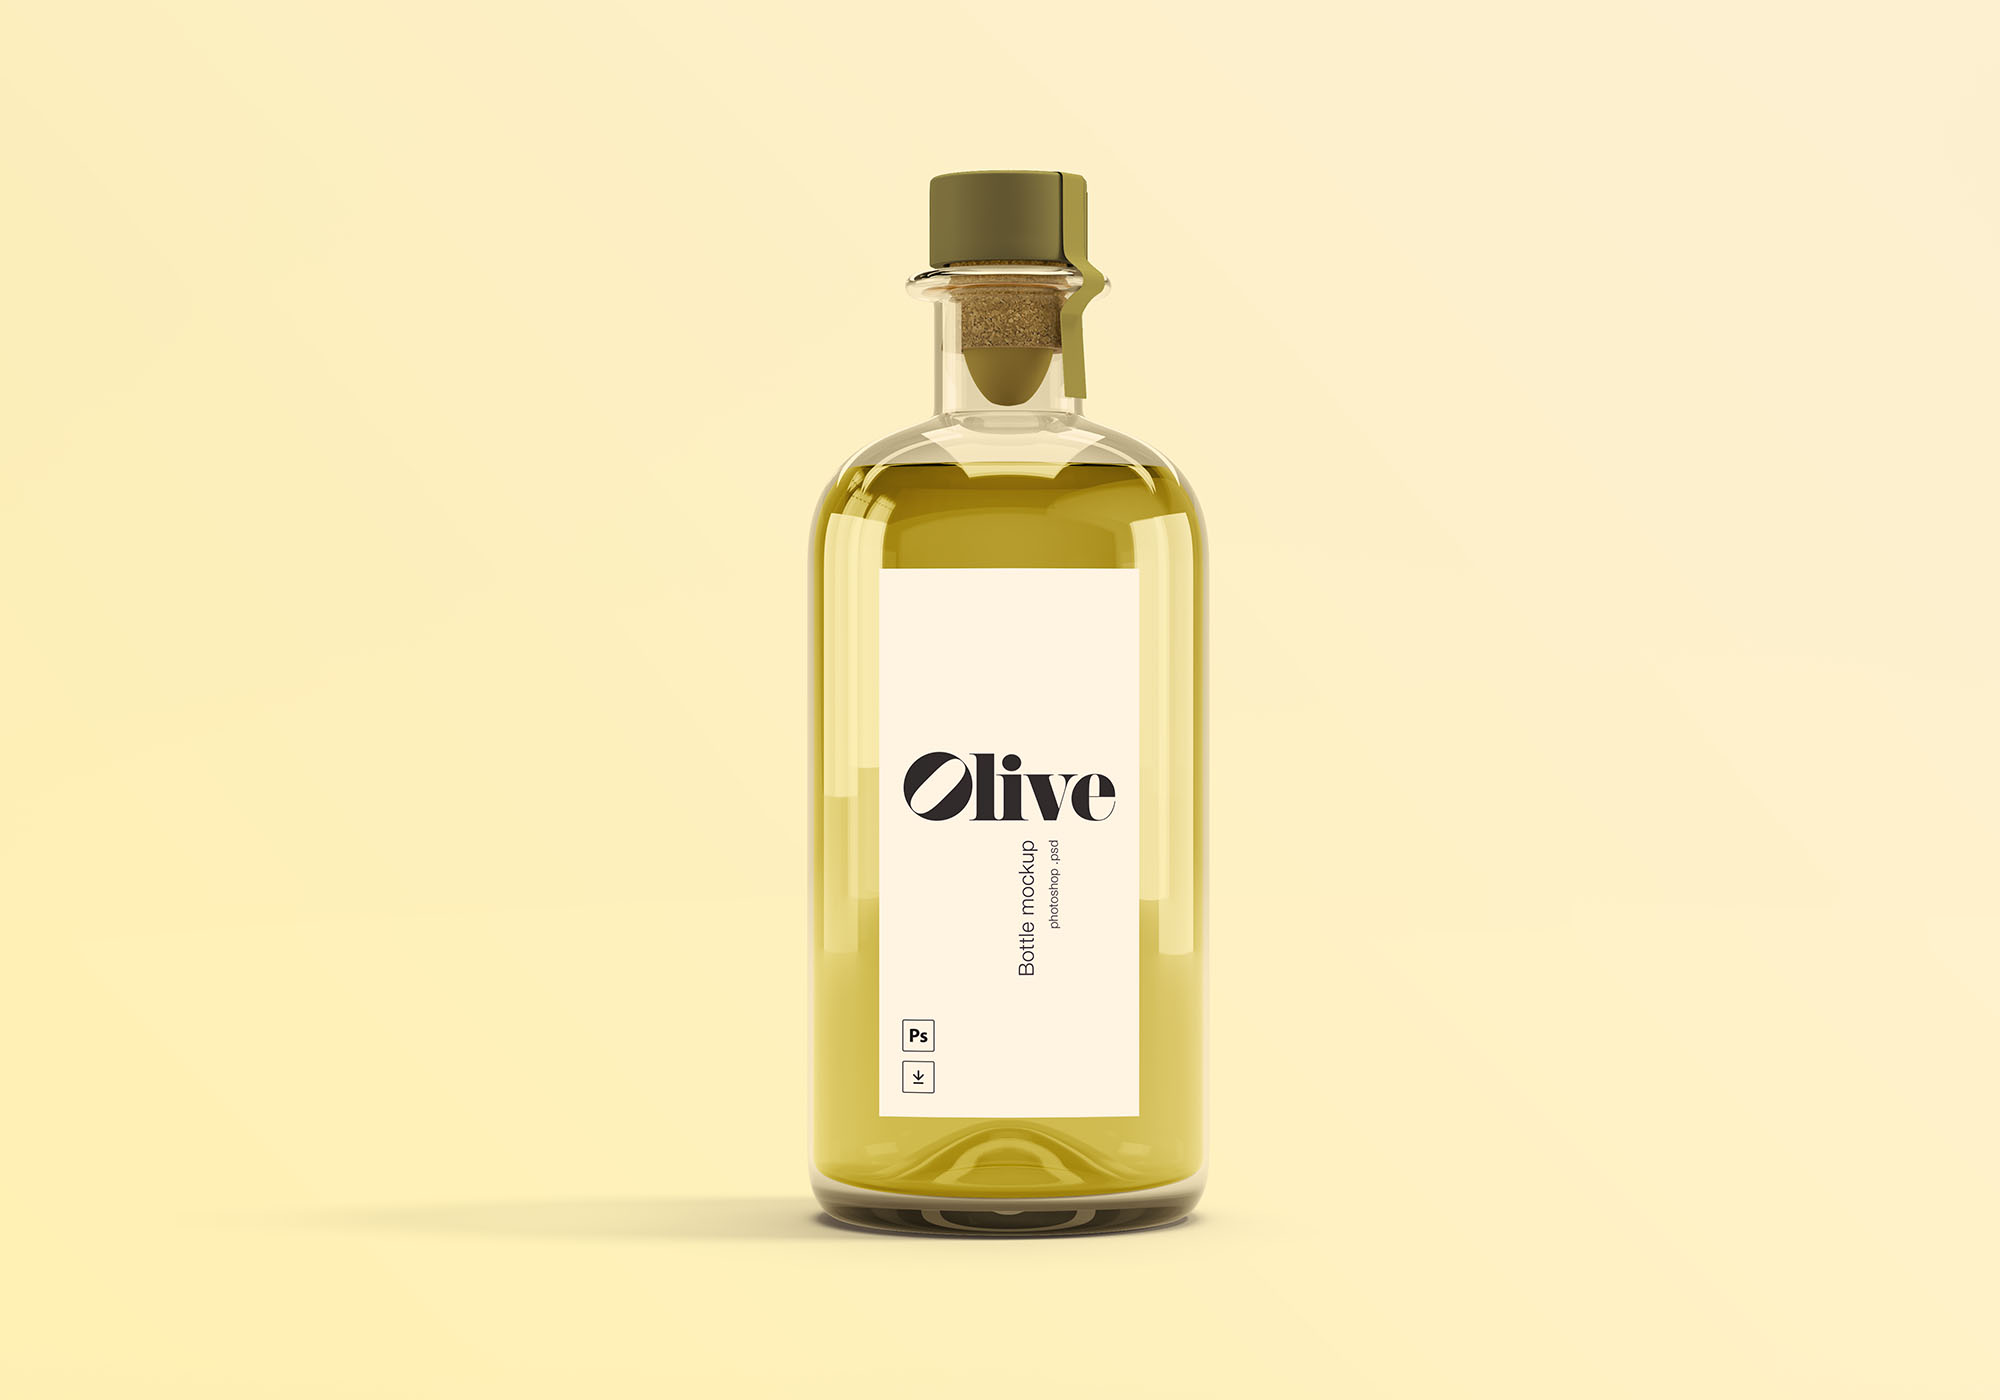 橄榄油瓶贴图样机模版素材 Olive Oil Bottle